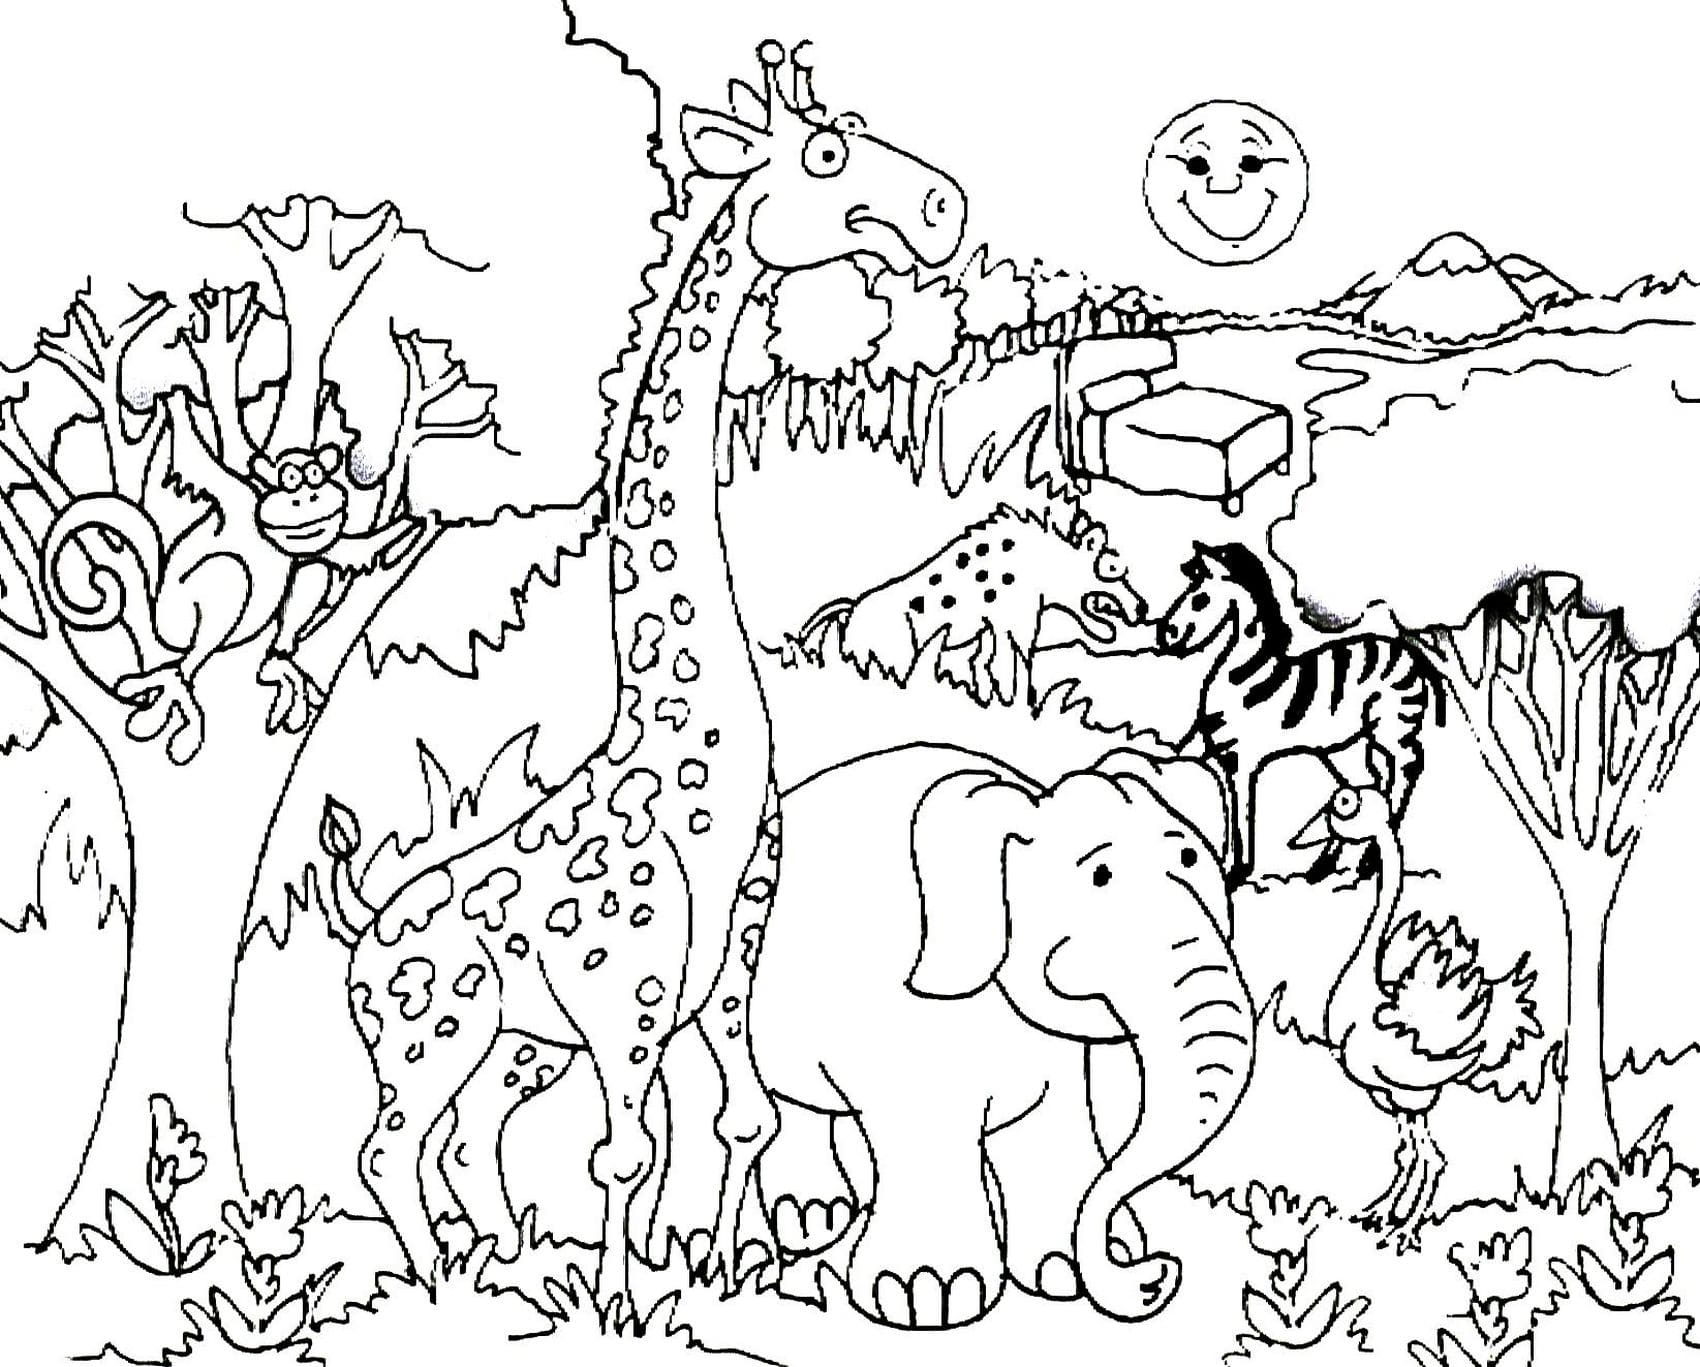 Распечатать раскраску зверей. Раскраски. Животные. Раскраски с животными. Живые раскраски. Раскраски животных для детей.